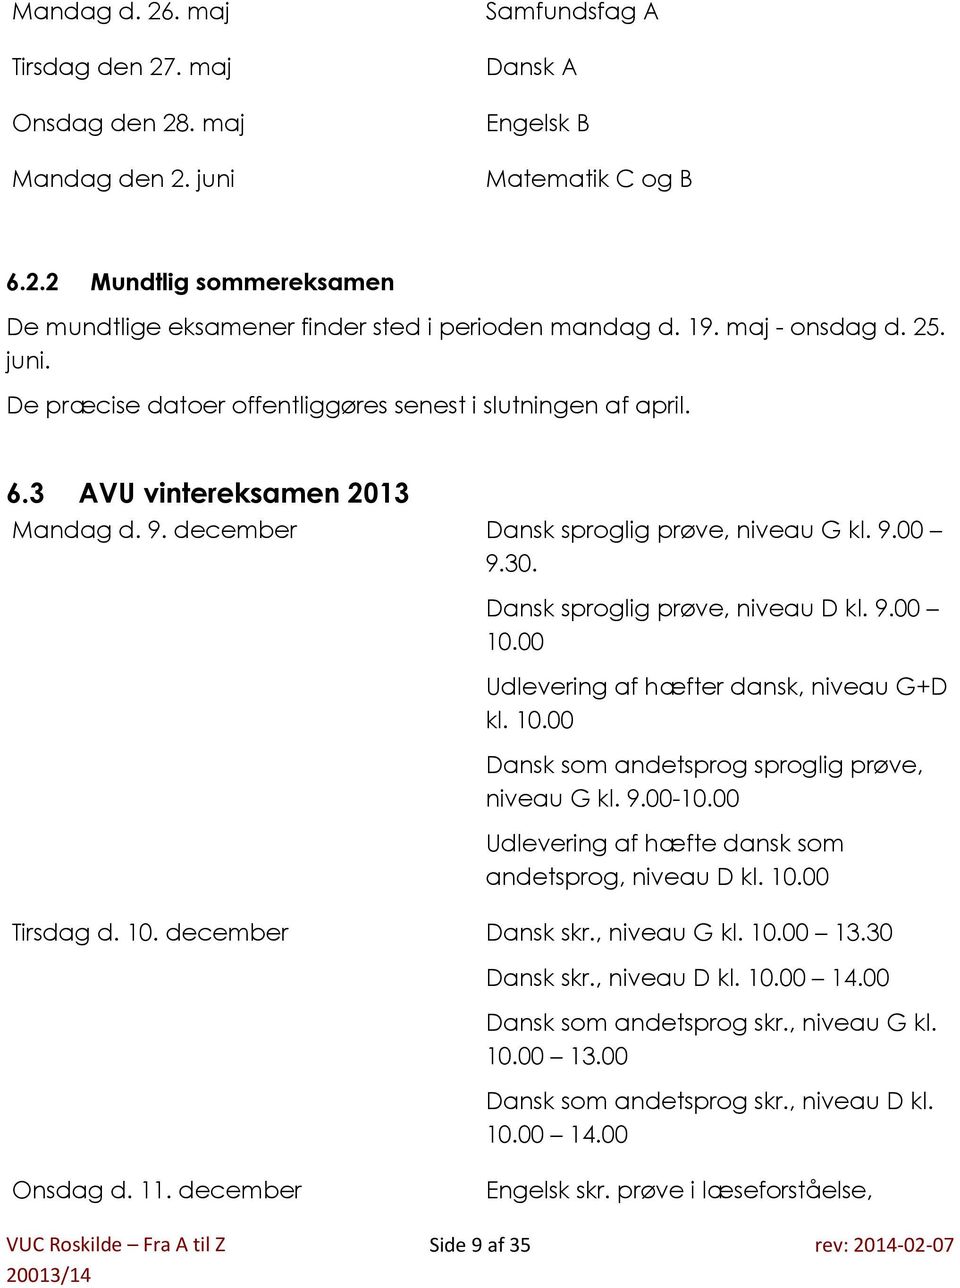 VUC Roskilde Fra A til Z - PDF Gratis download